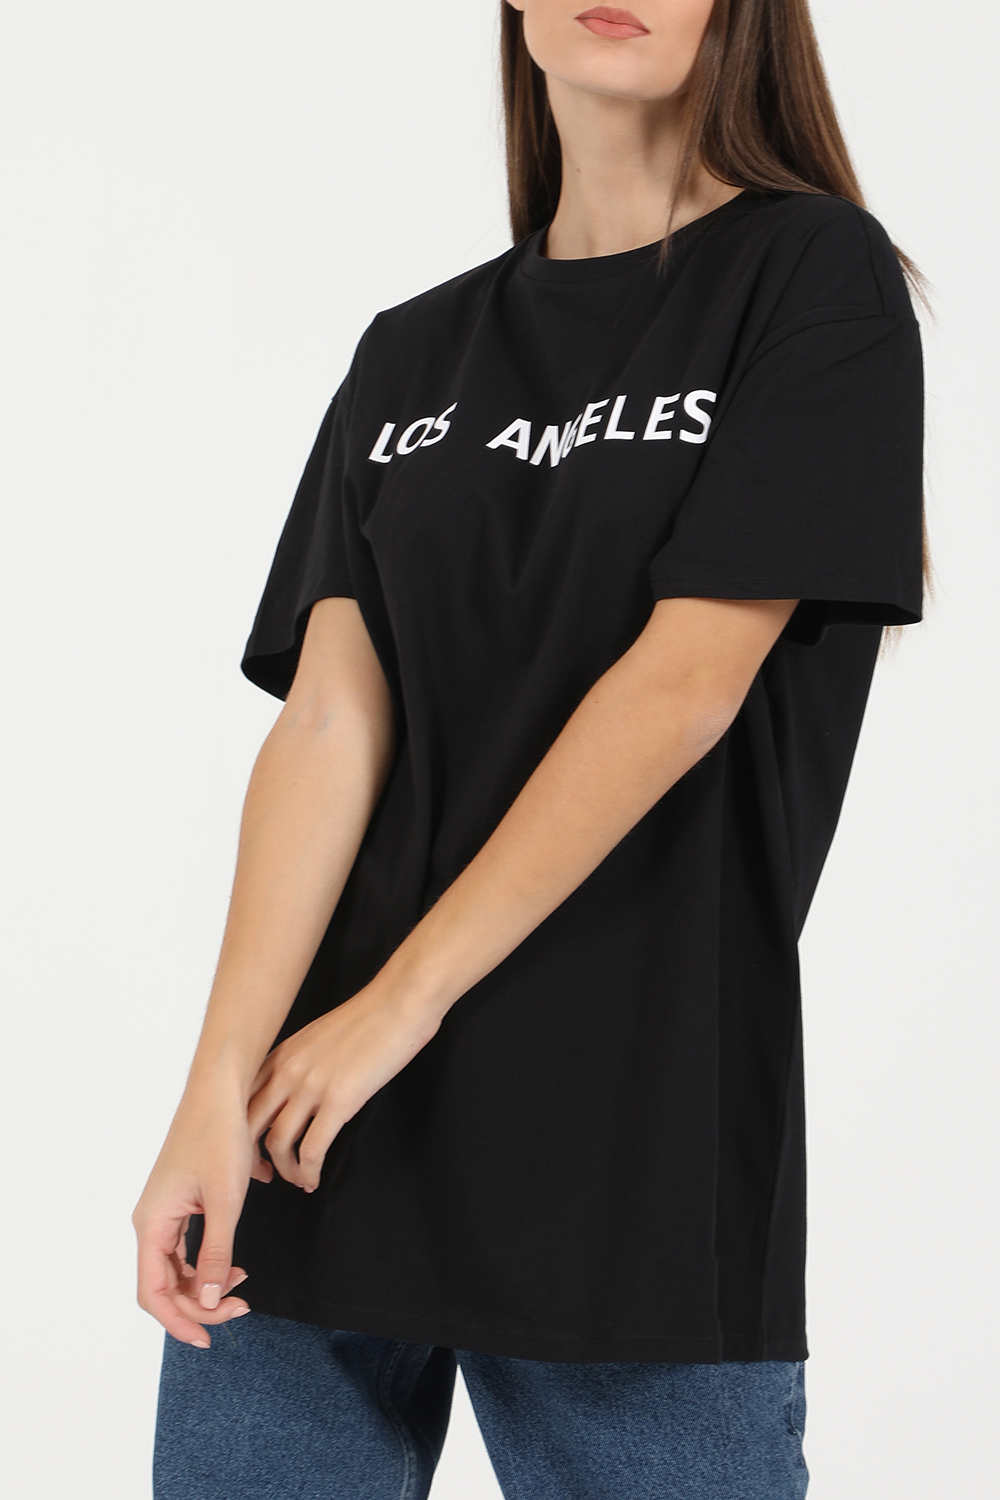 Γυναικεία/Ρούχα/Μπλούζες/Κοντομάνικες KENDALL + KYLIE - Γυναικείο t-shirt KENDALL + KYLIE ACTIVE LA OVERSIZED μαύρο